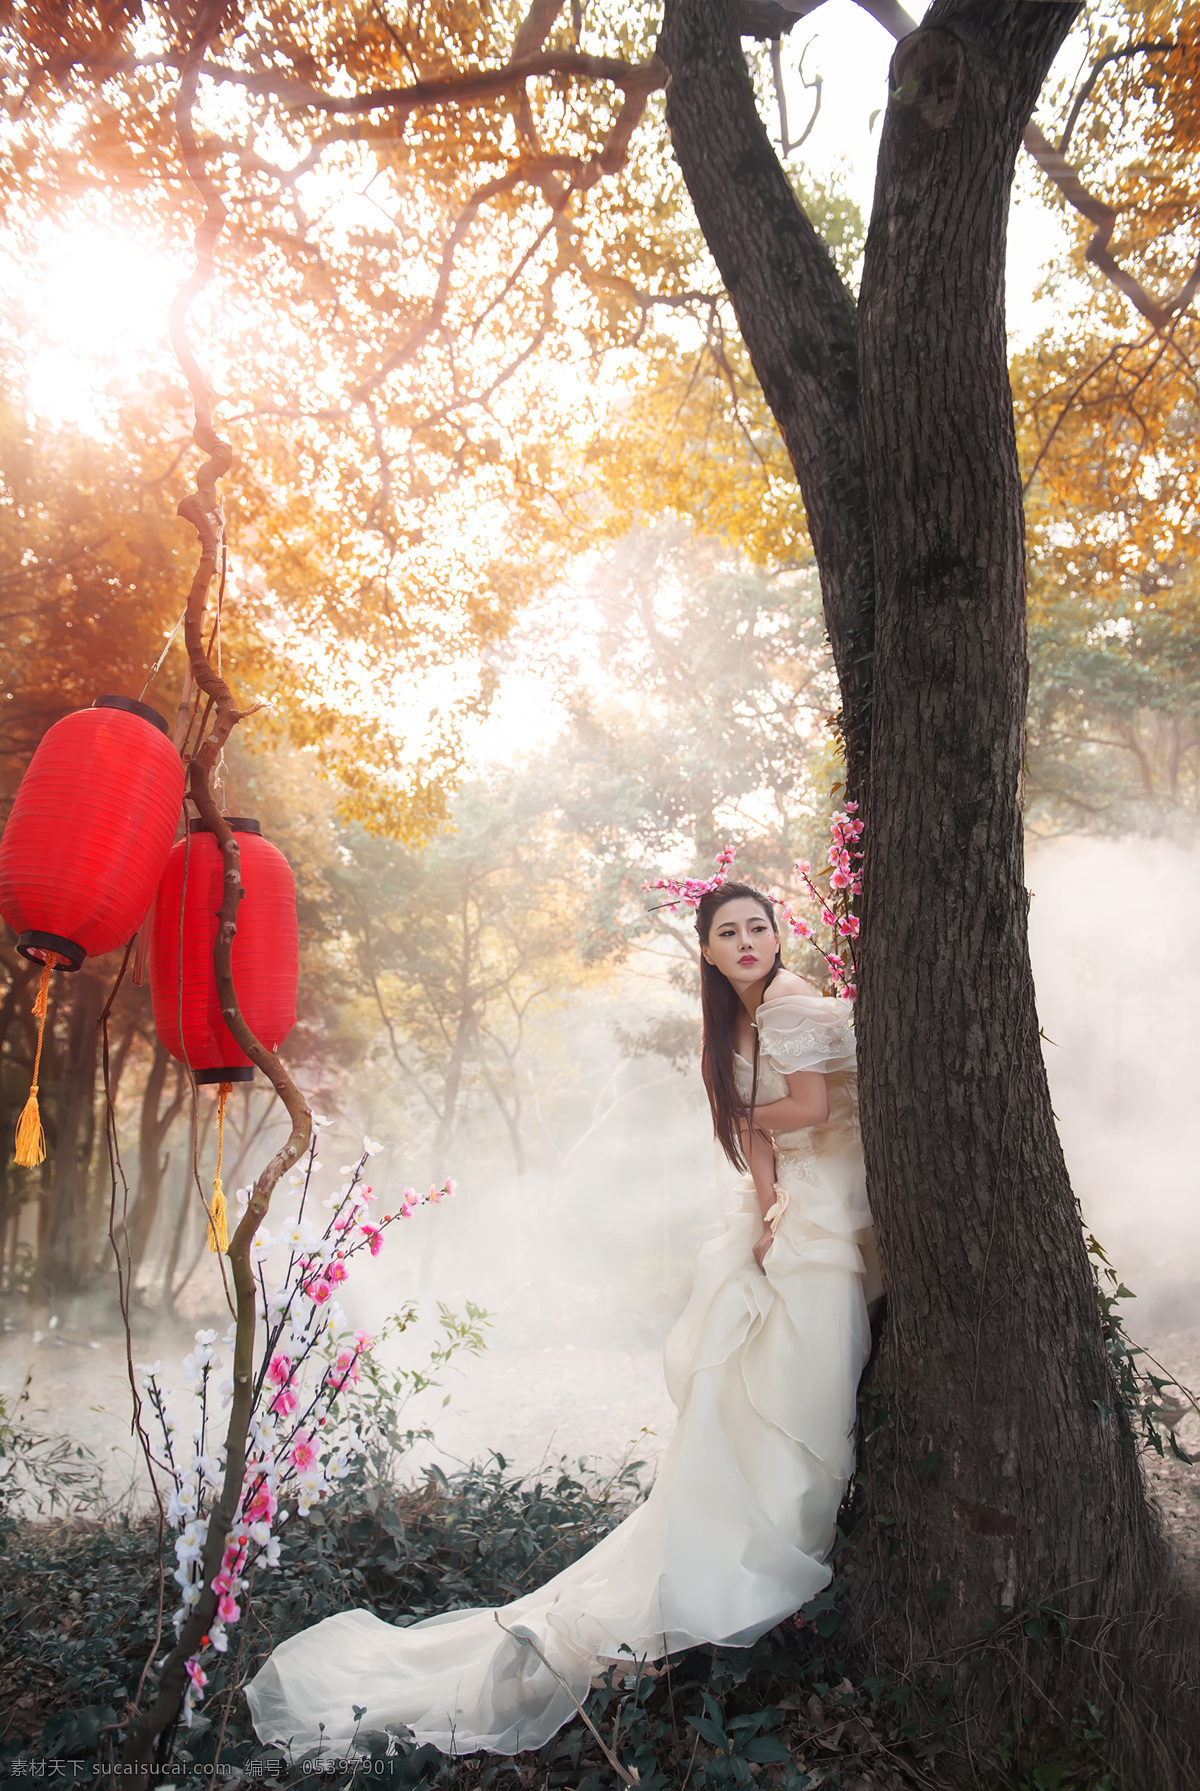 美女 白色婚莎 写真 户外 森林 清晨 人物 模特 清鲜 人物摄影 人物图库